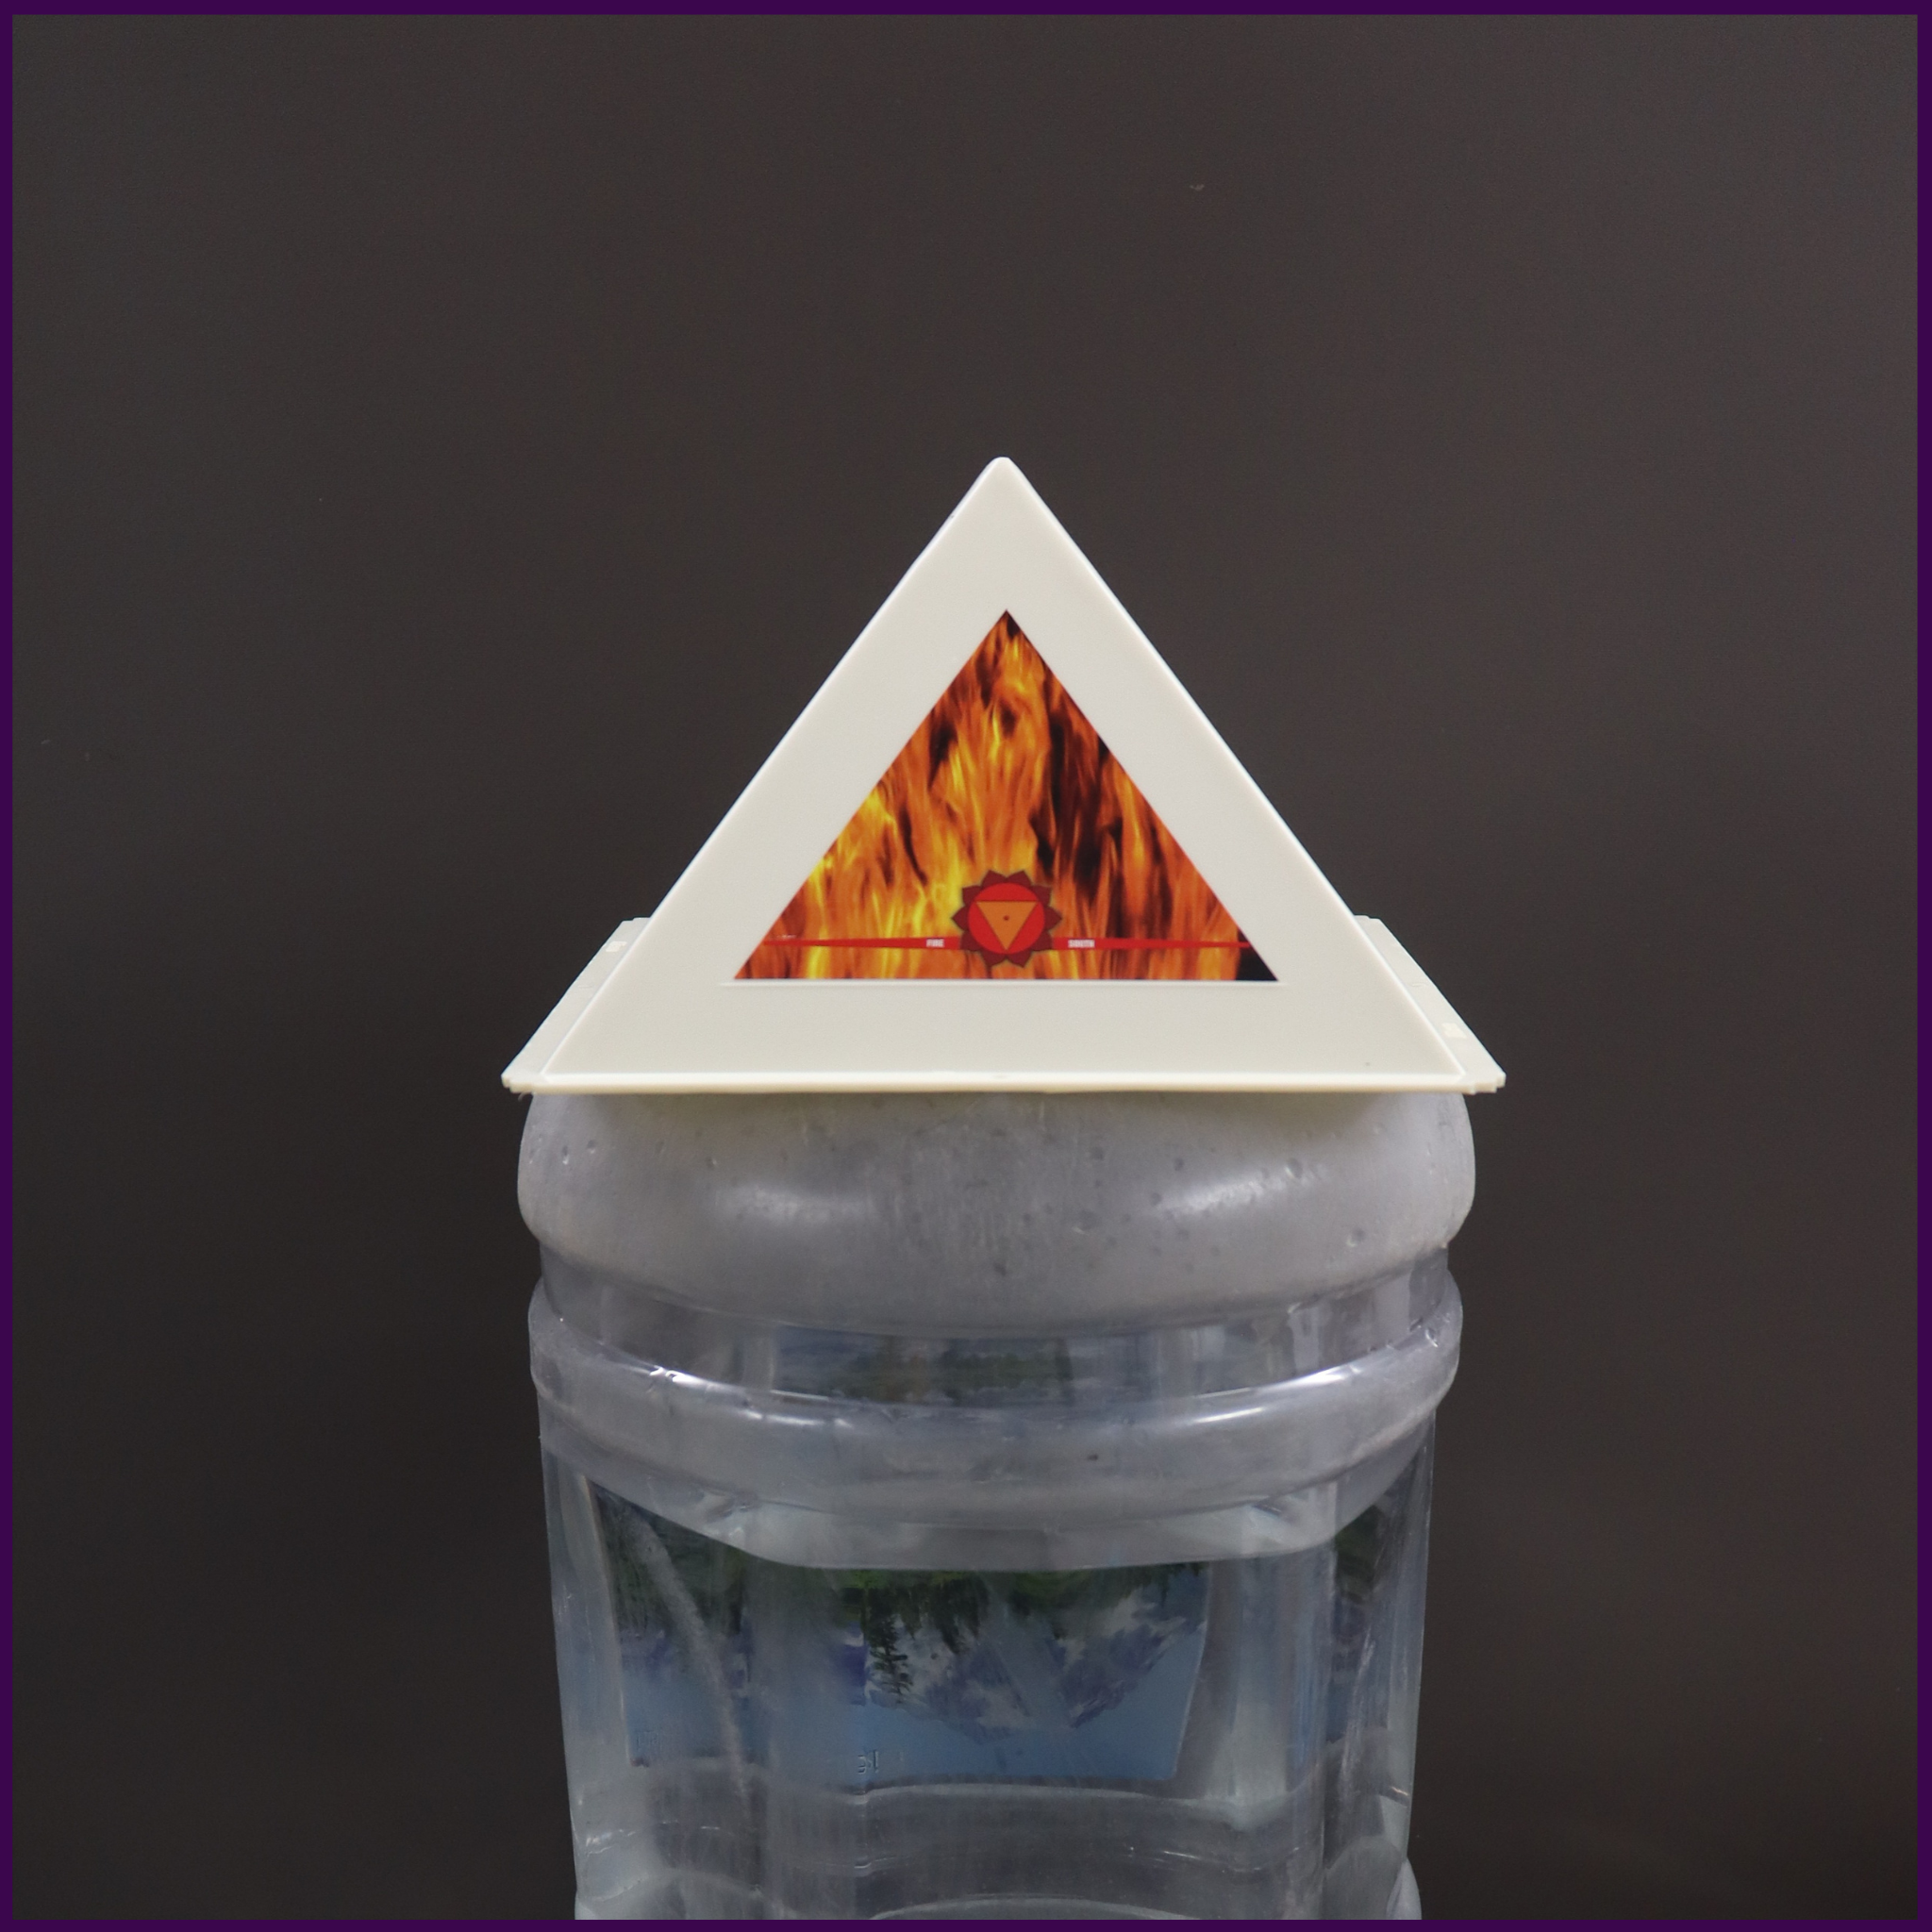 Pyramid Head Cap for Daily Meditation - 3 pieces - 51pyramids